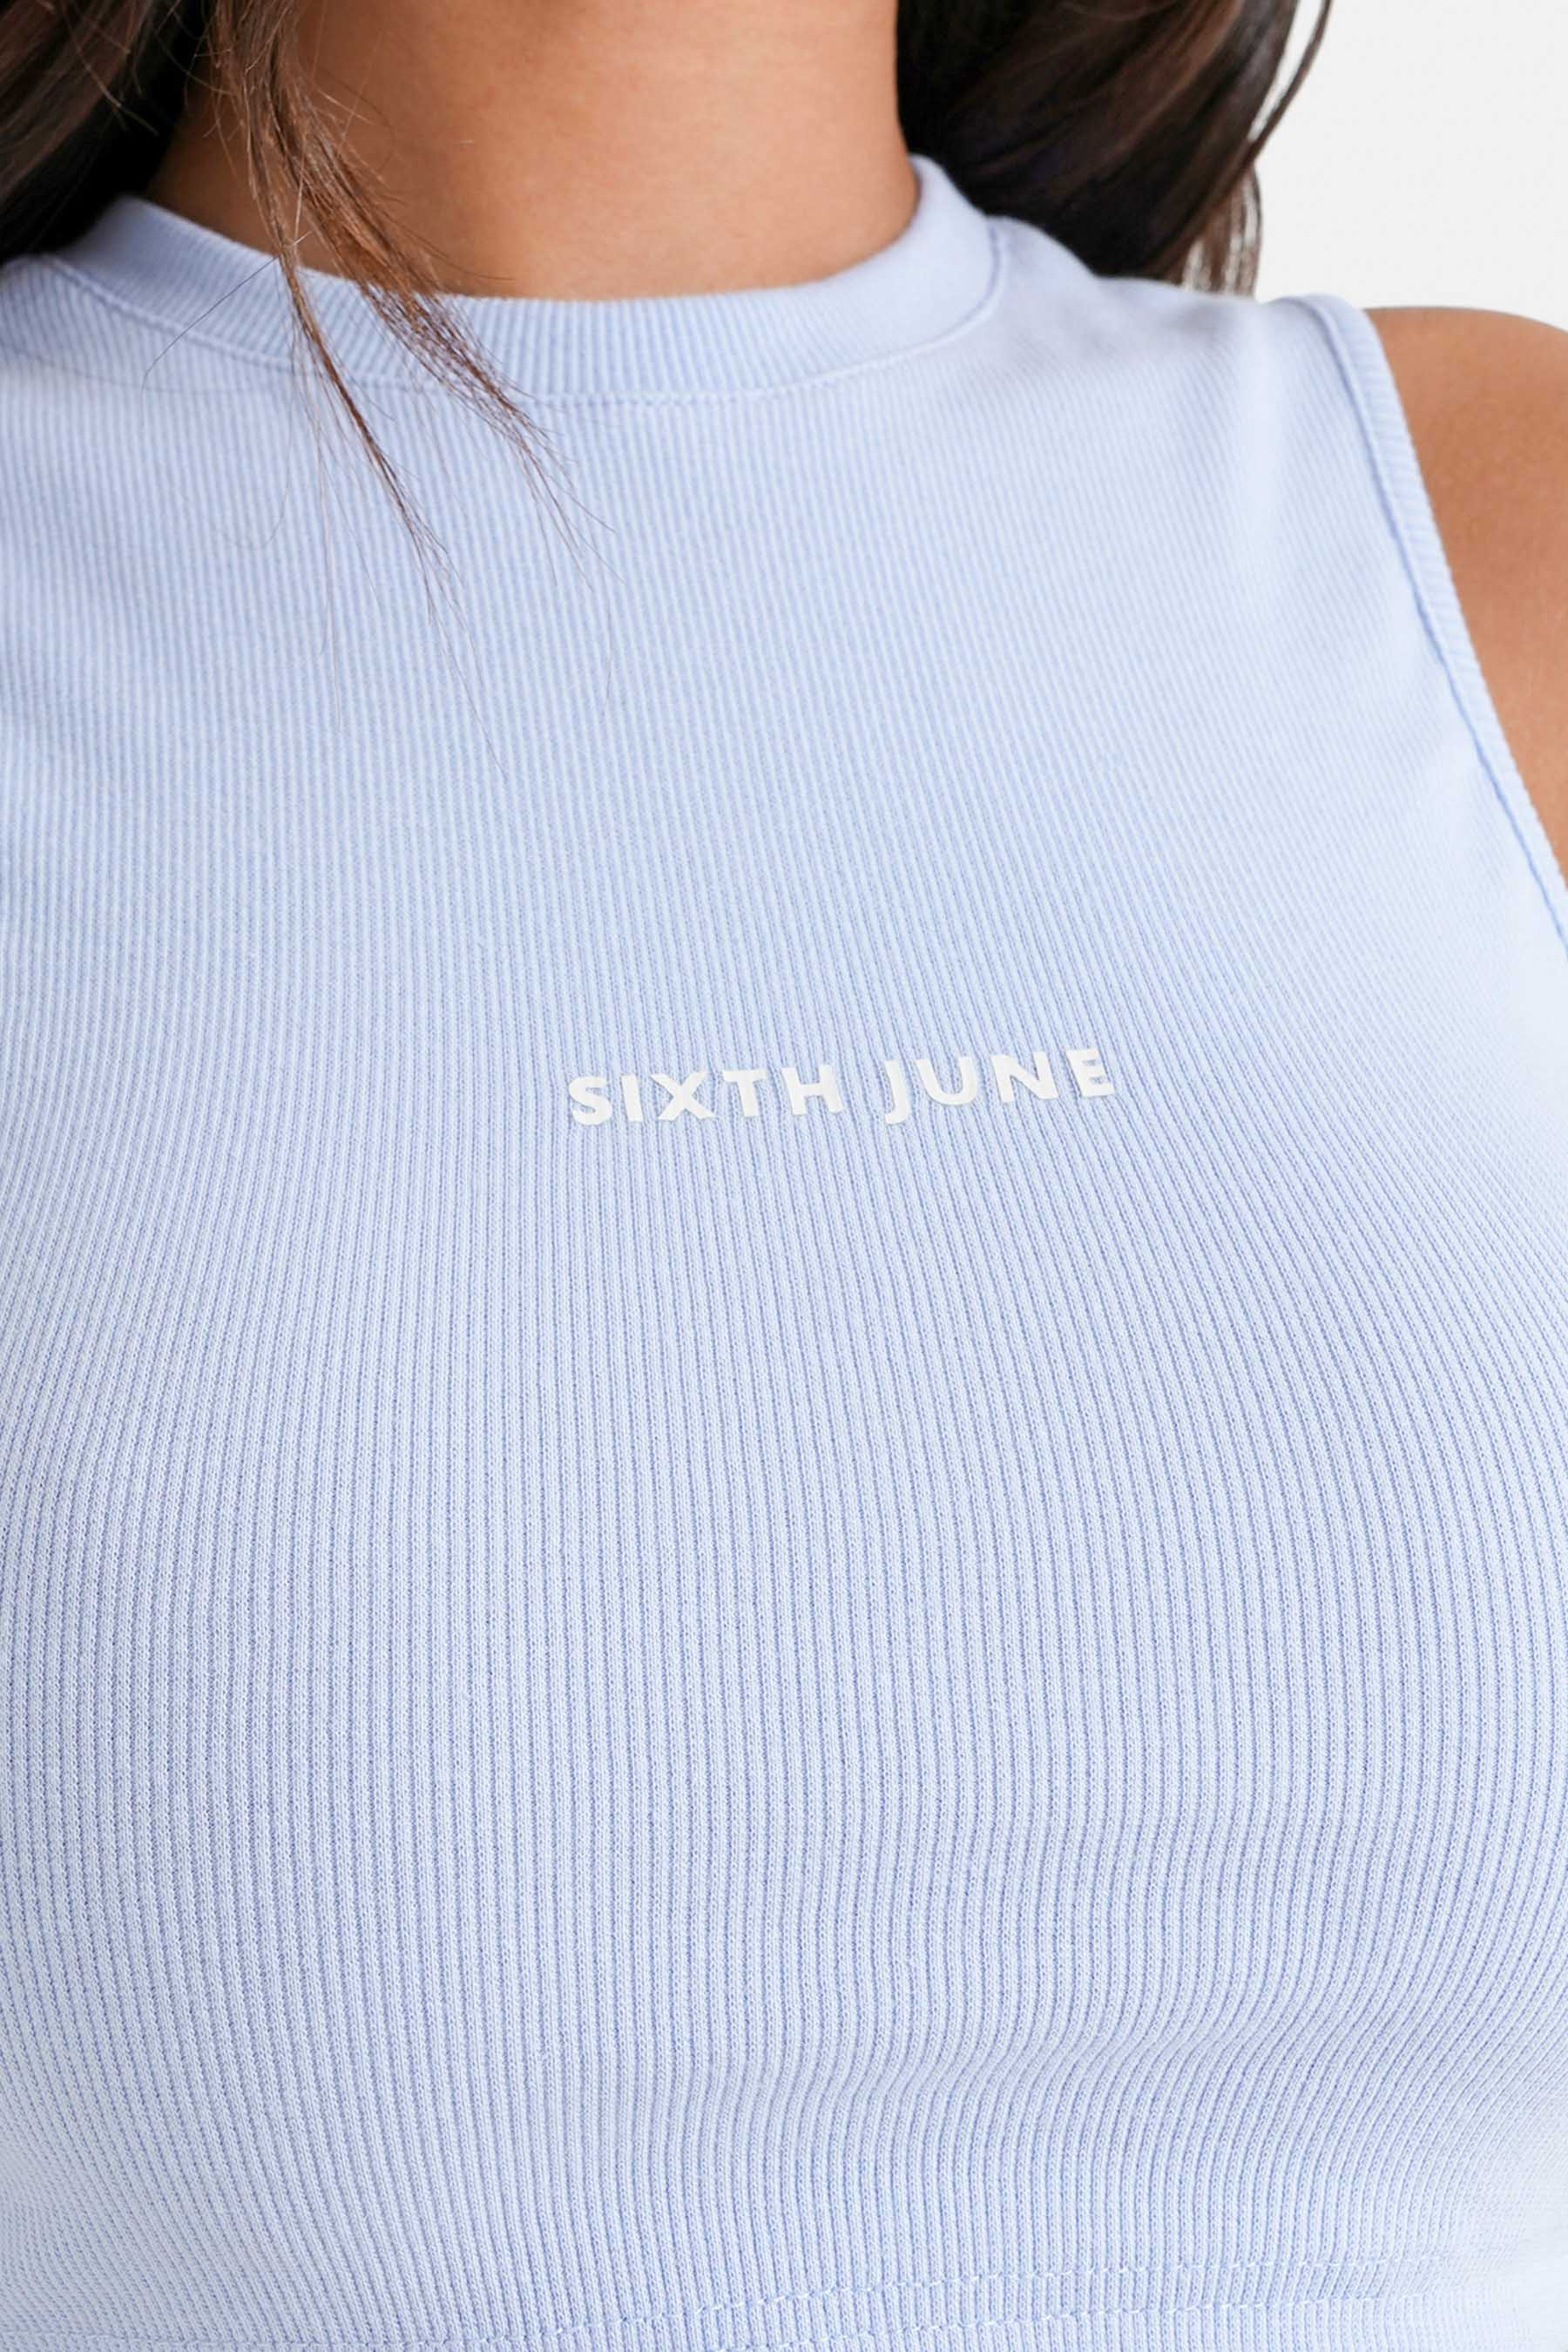 Sixth June - Top court côtelé Bleu clair